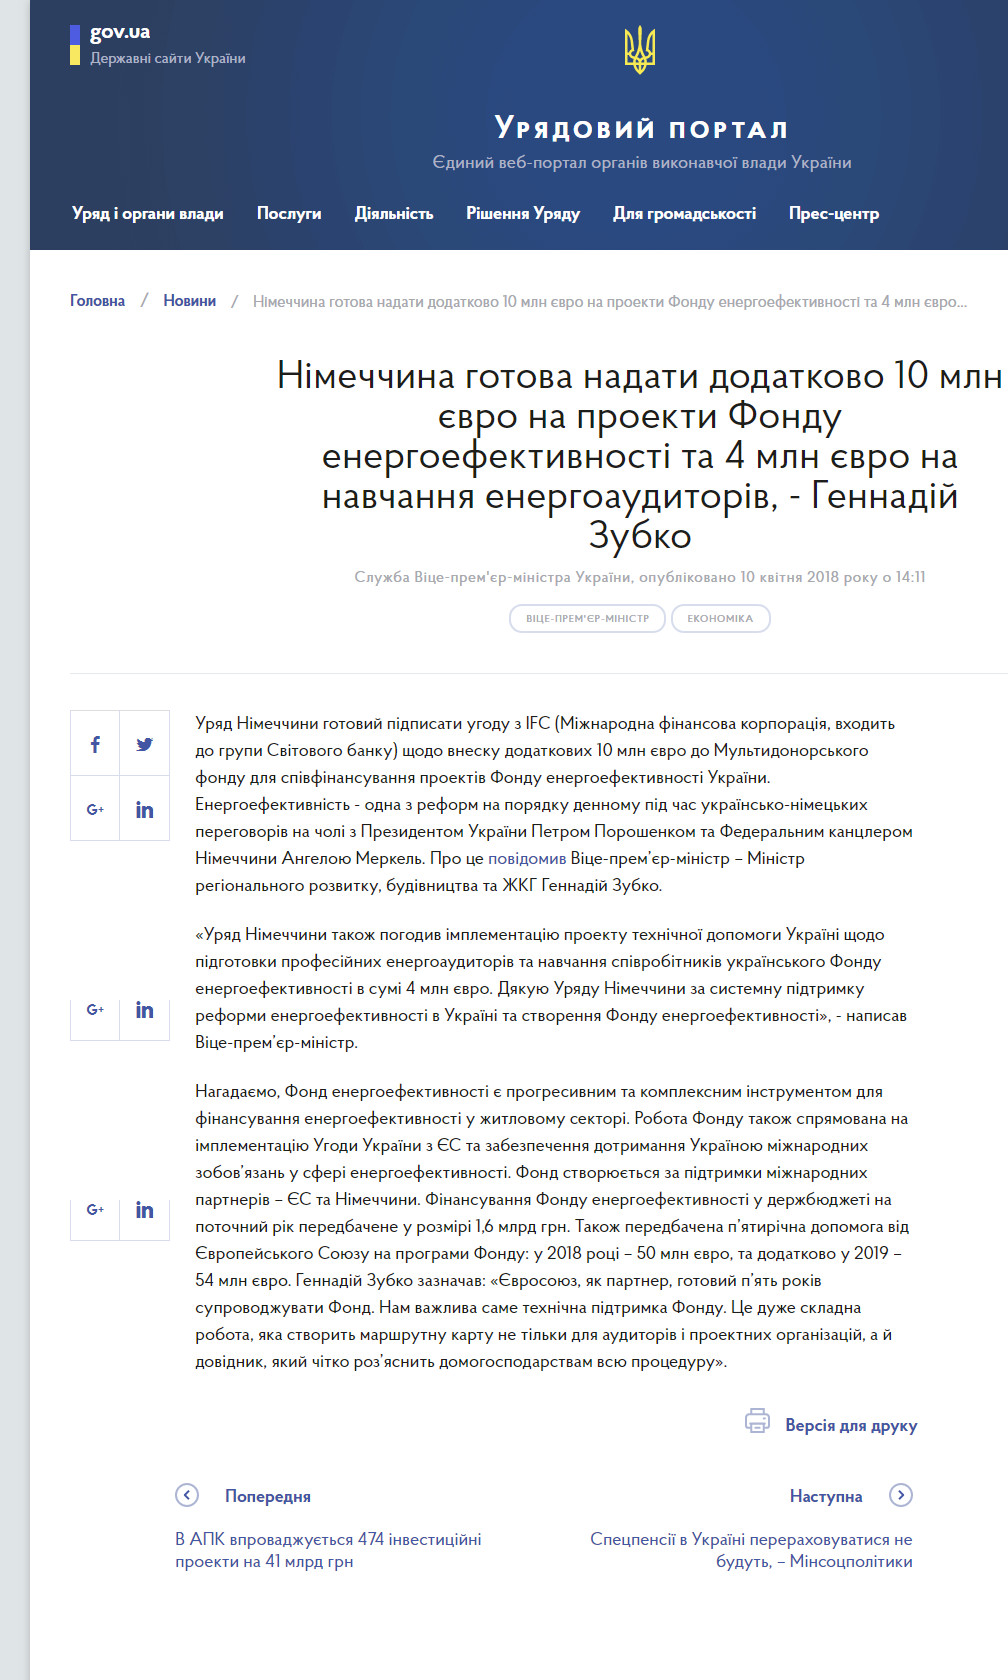 https://www.kmu.gov.ua/ua/news/nimechchina-gotova-nadati-dodatkovo-10-mln-yevro-na-proekti-fondu-energoefektivnosti-ta-4-mln-yevro-na-navchannya-energoauditoriv-gennadij-zubko